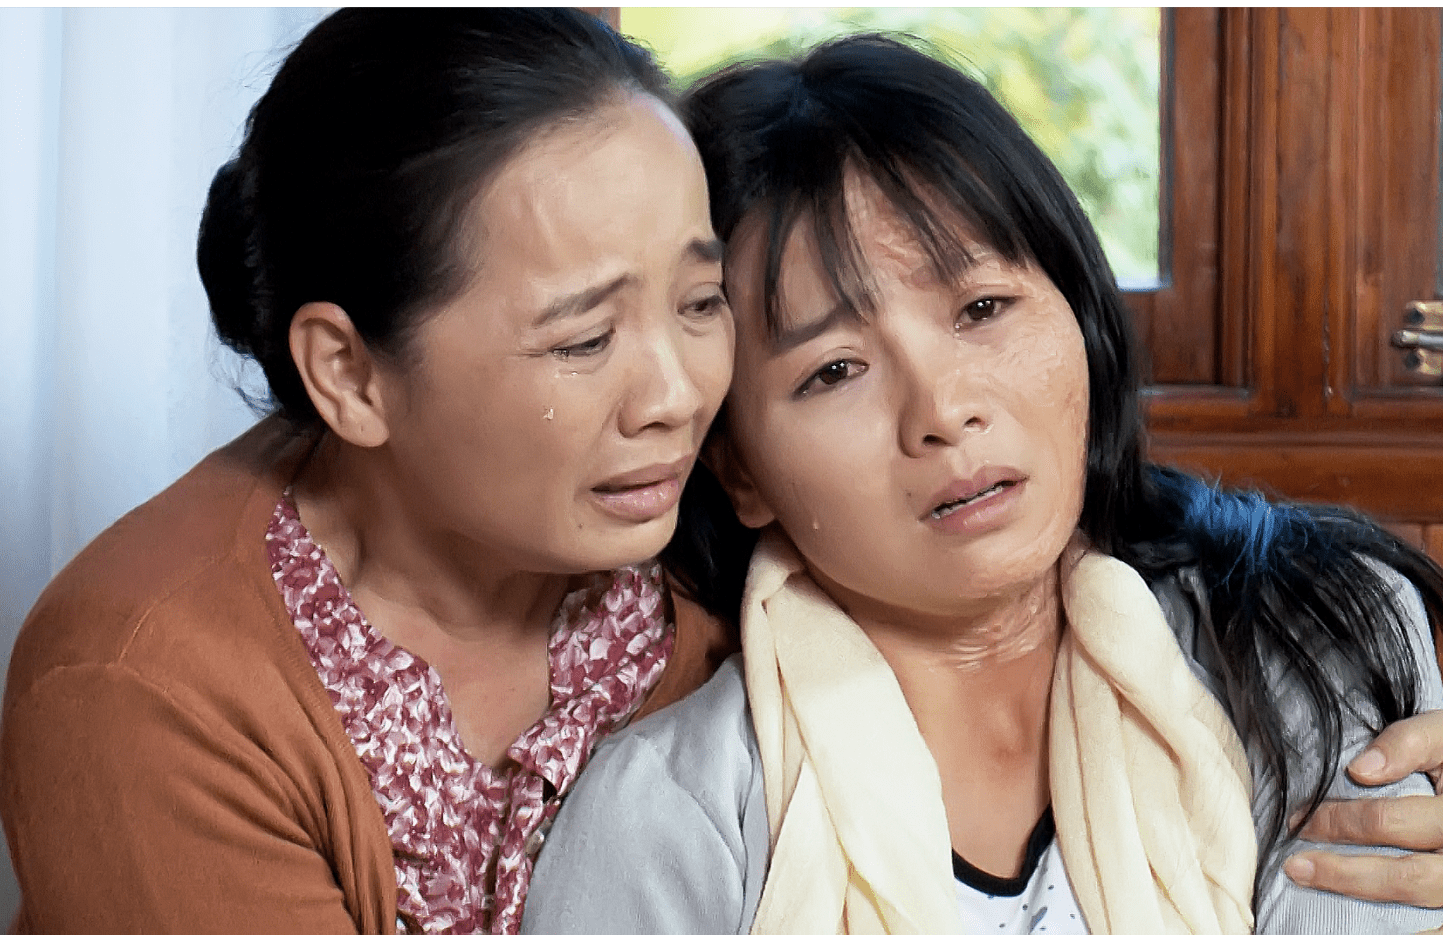 Cảnh cưỡng hiếp tập thể trong phim Việt khiến khán giả sợ hãi - 1